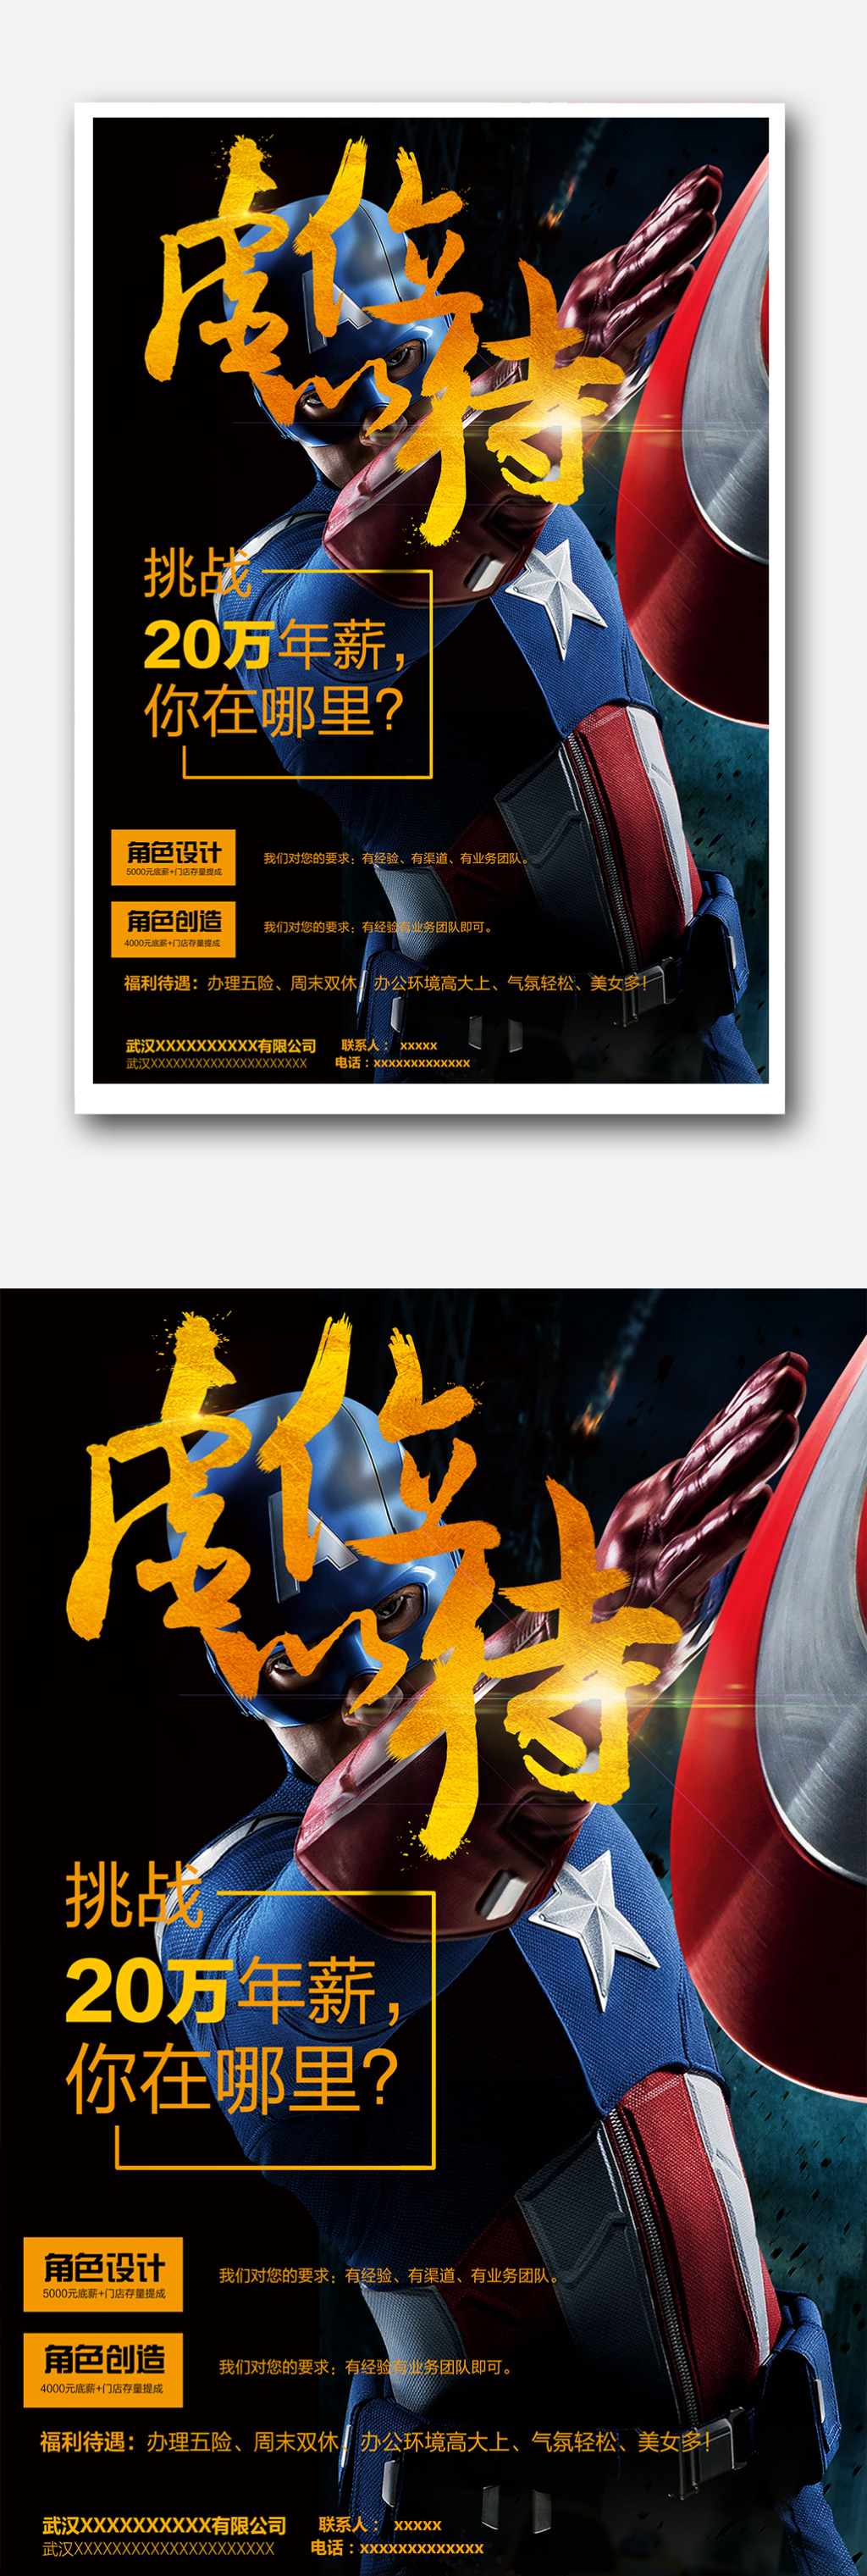 游戏公司招聘海报模板下载图片设计素材_高清